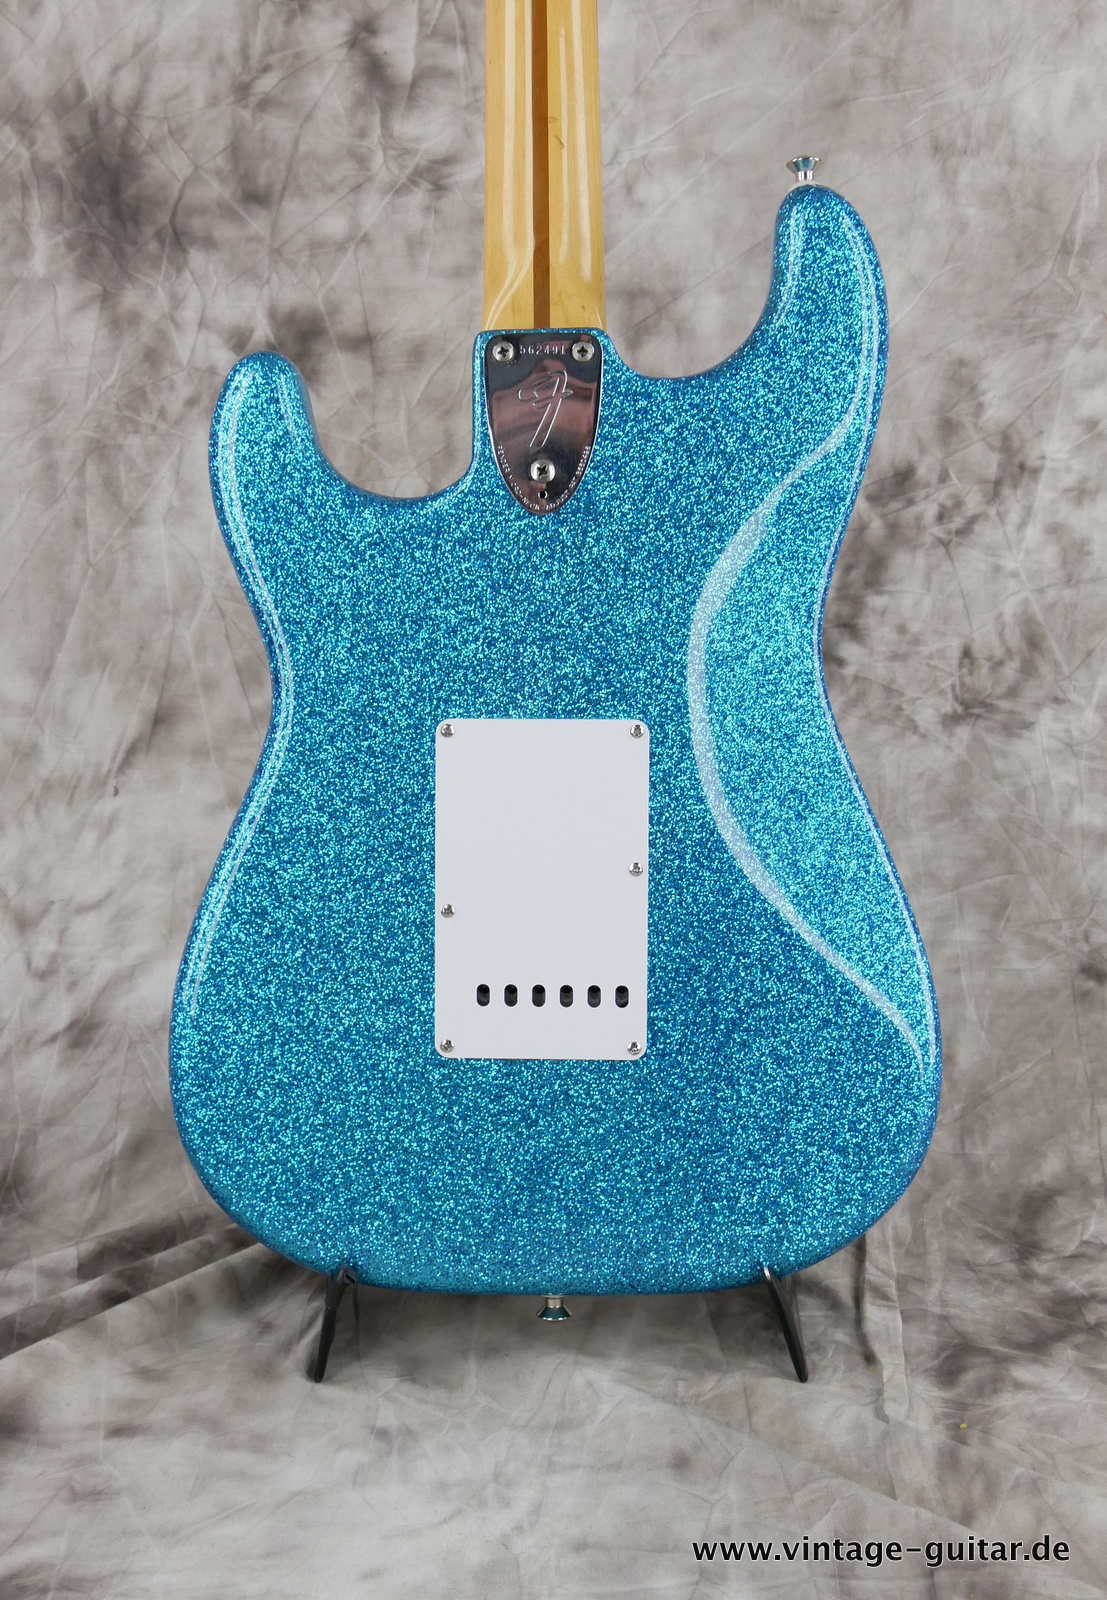 Fender-Stratocaster-1974c-blue-sparkle-004.JPG